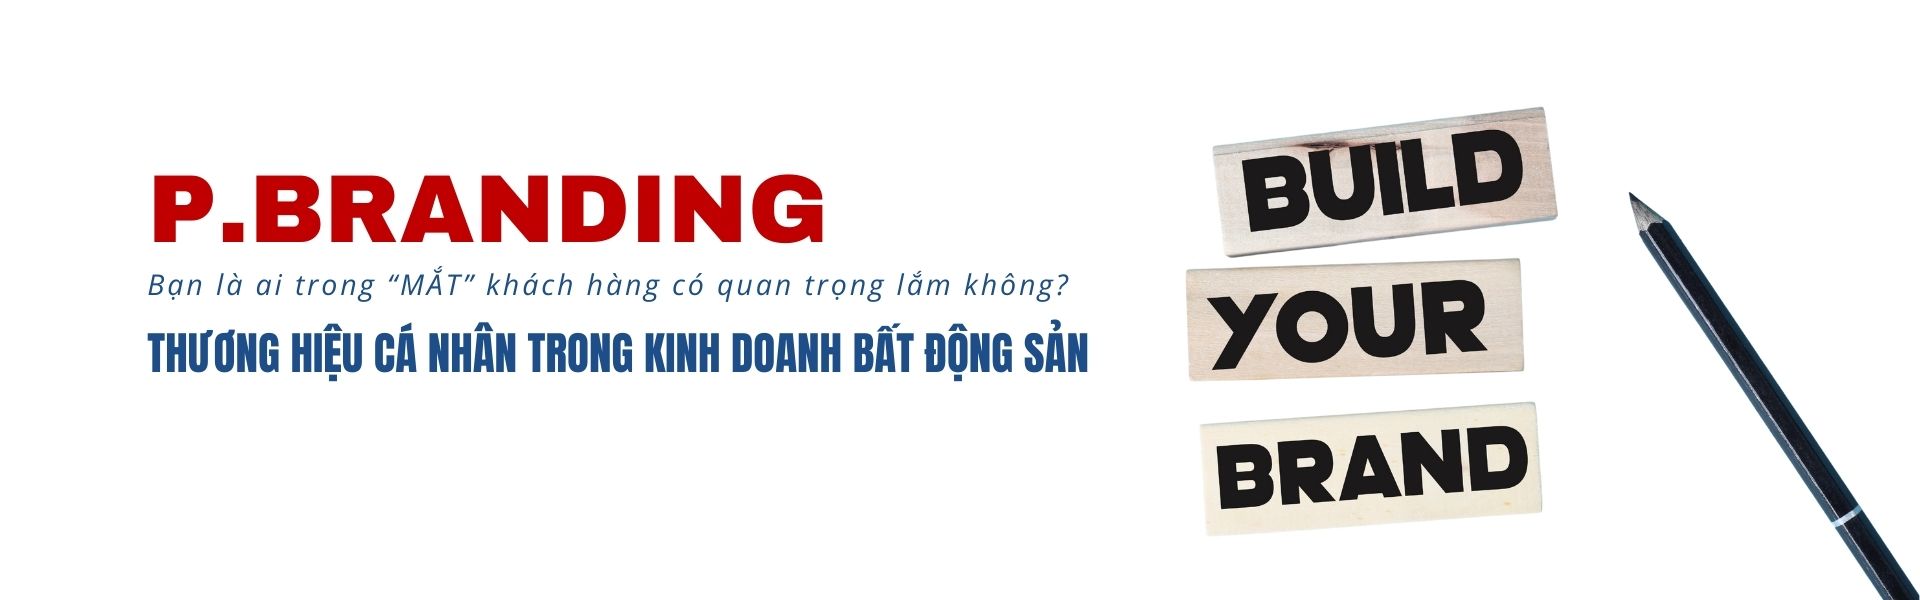 THUONG HIEU CA NHAN BAT DONG SAN